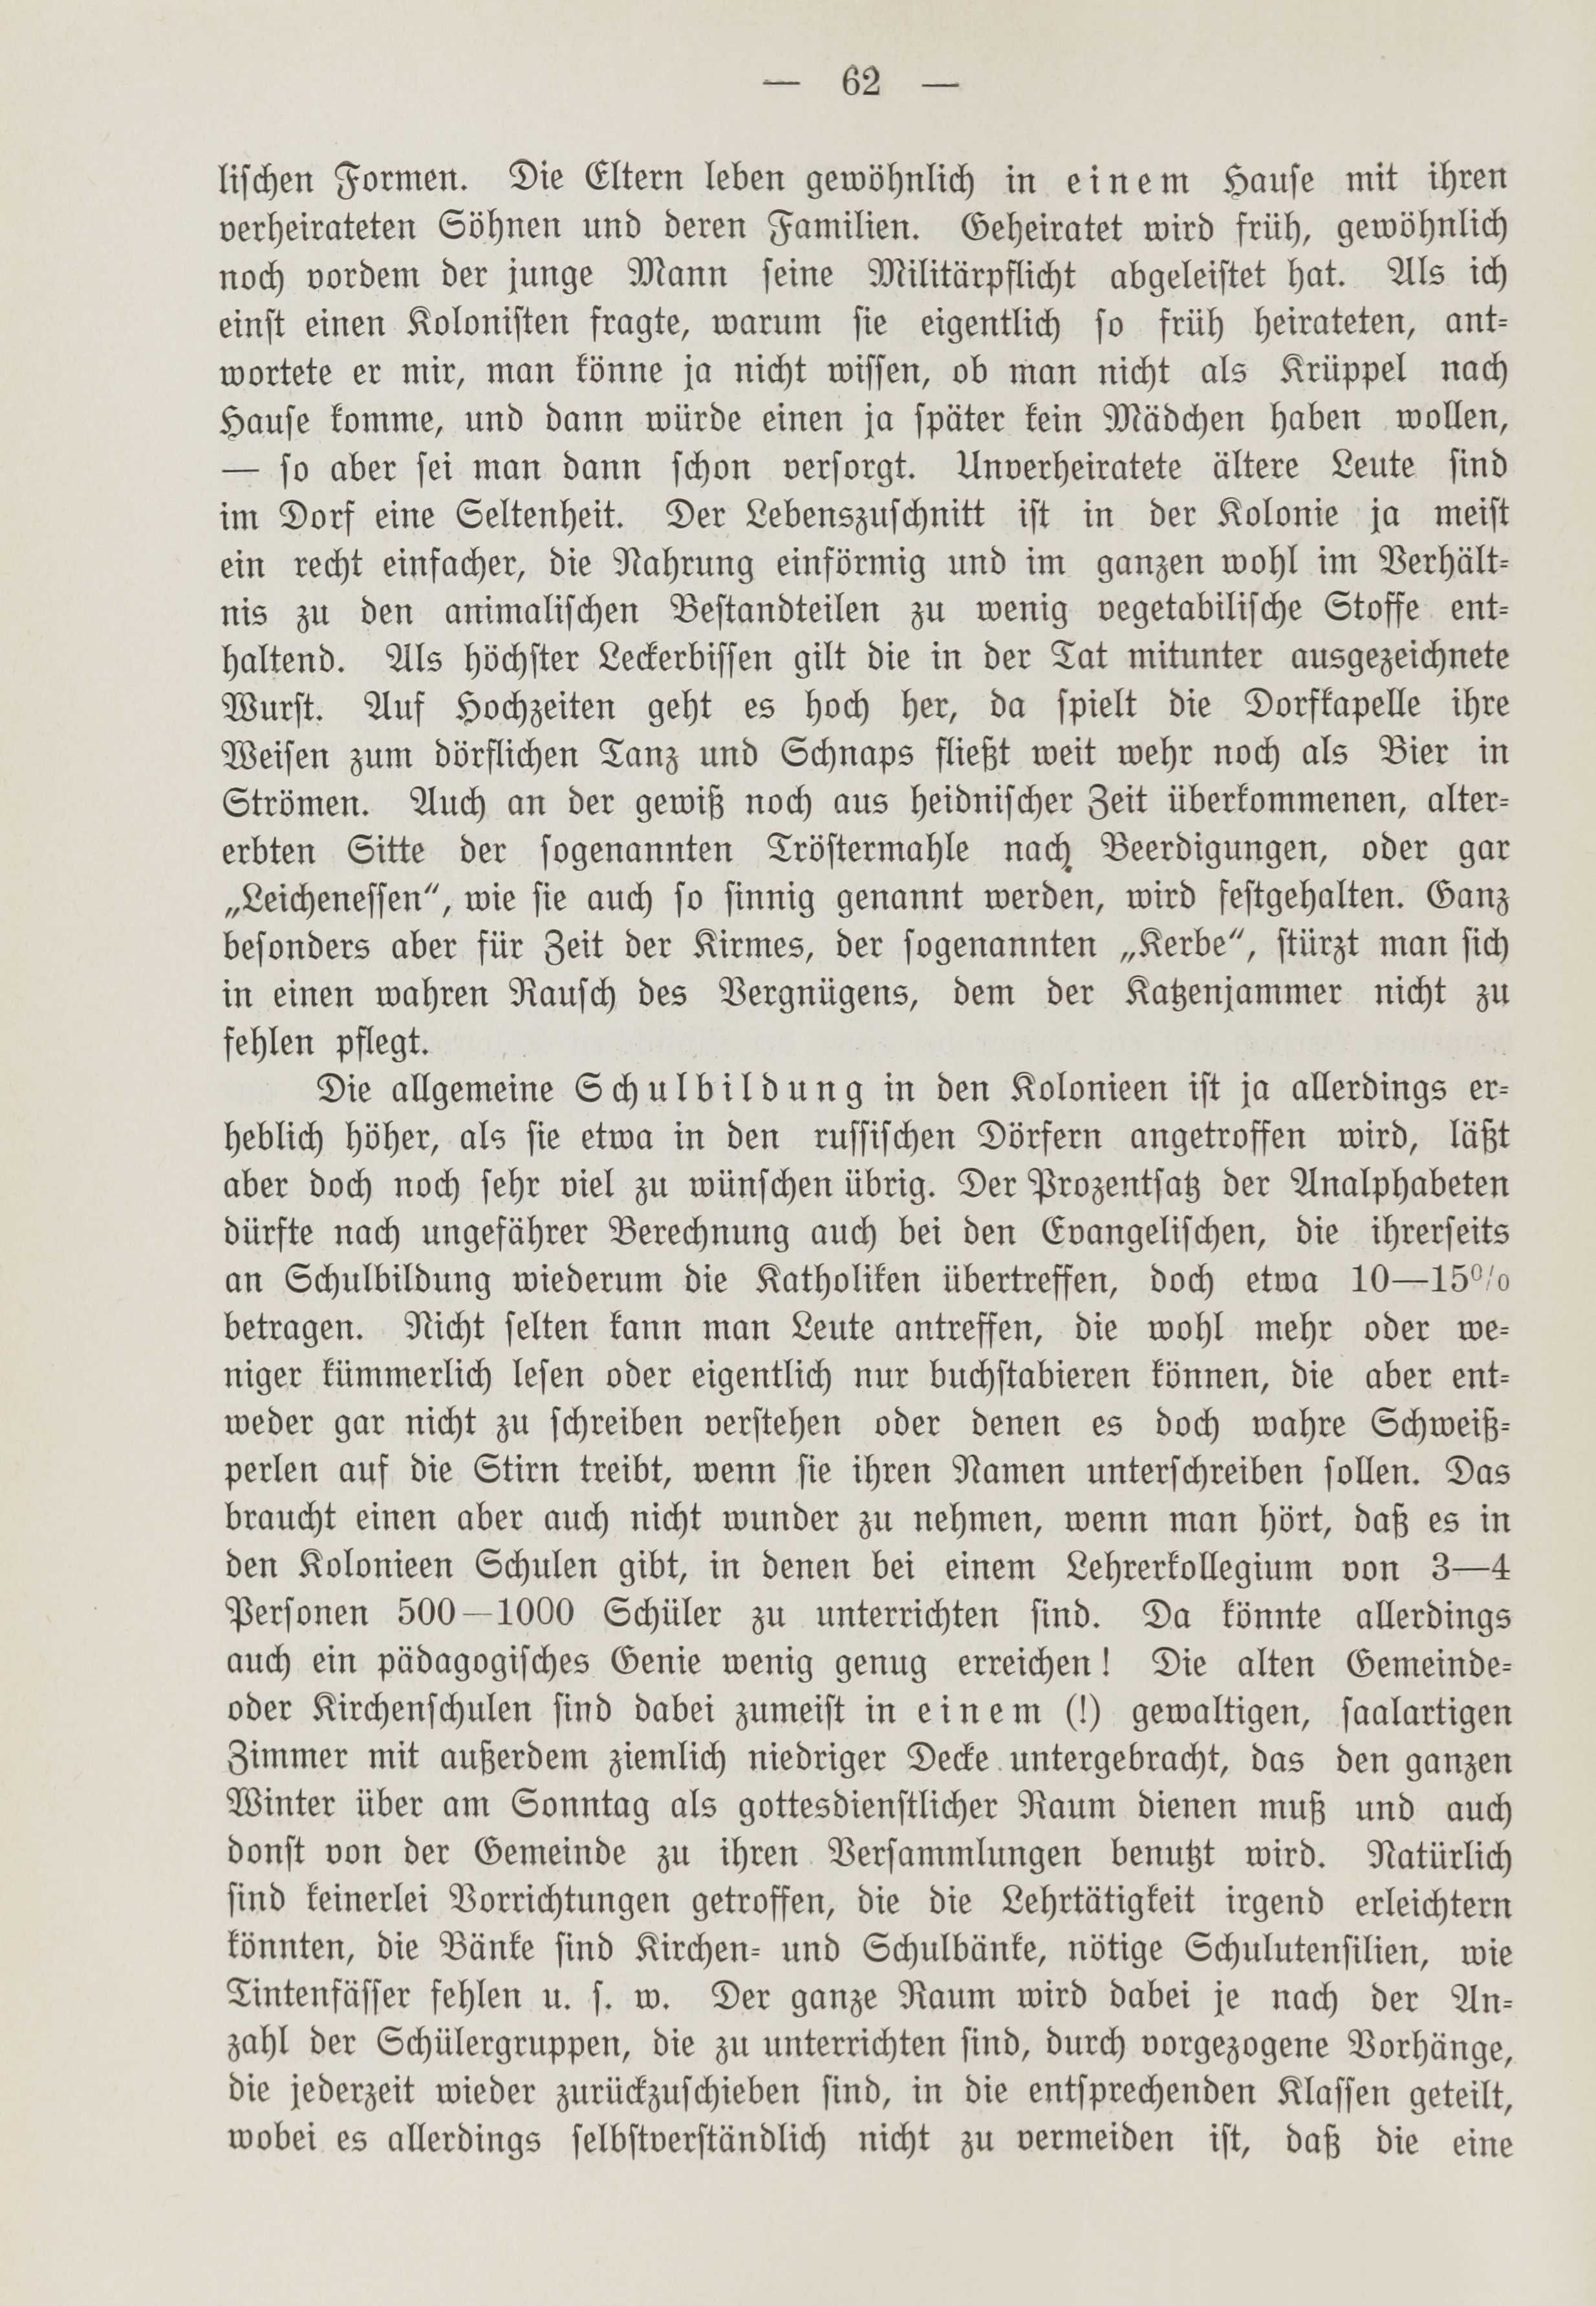 Deutsche Monatsschrift für Russland [1] (1912) | 69. (62) Main body of text